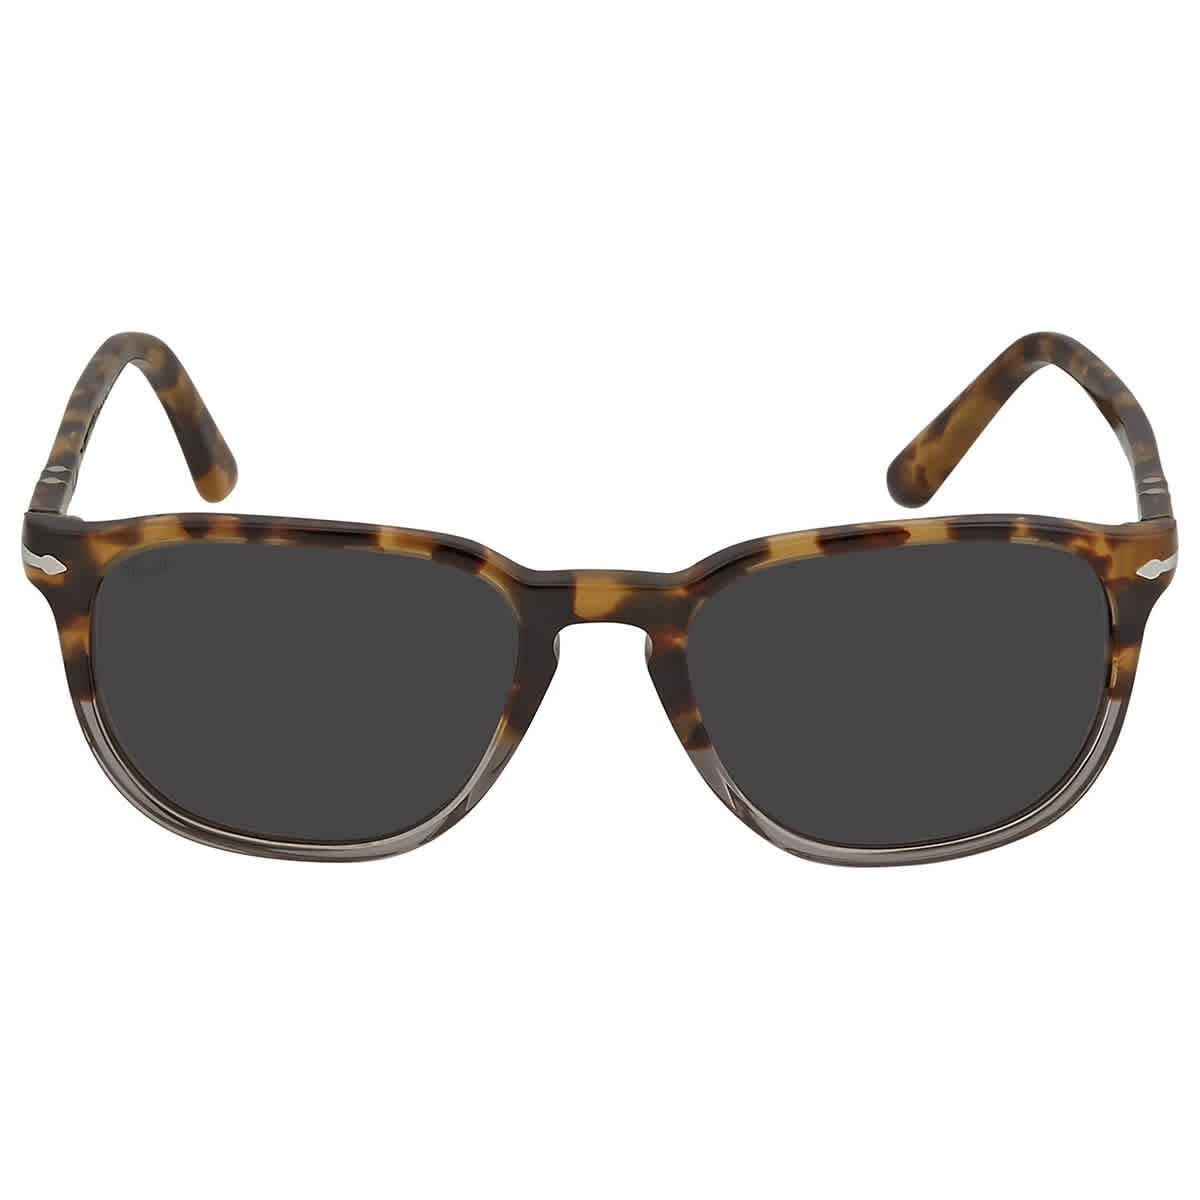 Persol Dark Smoke Square Men's Sunglasses PO3019S 1130B1 52